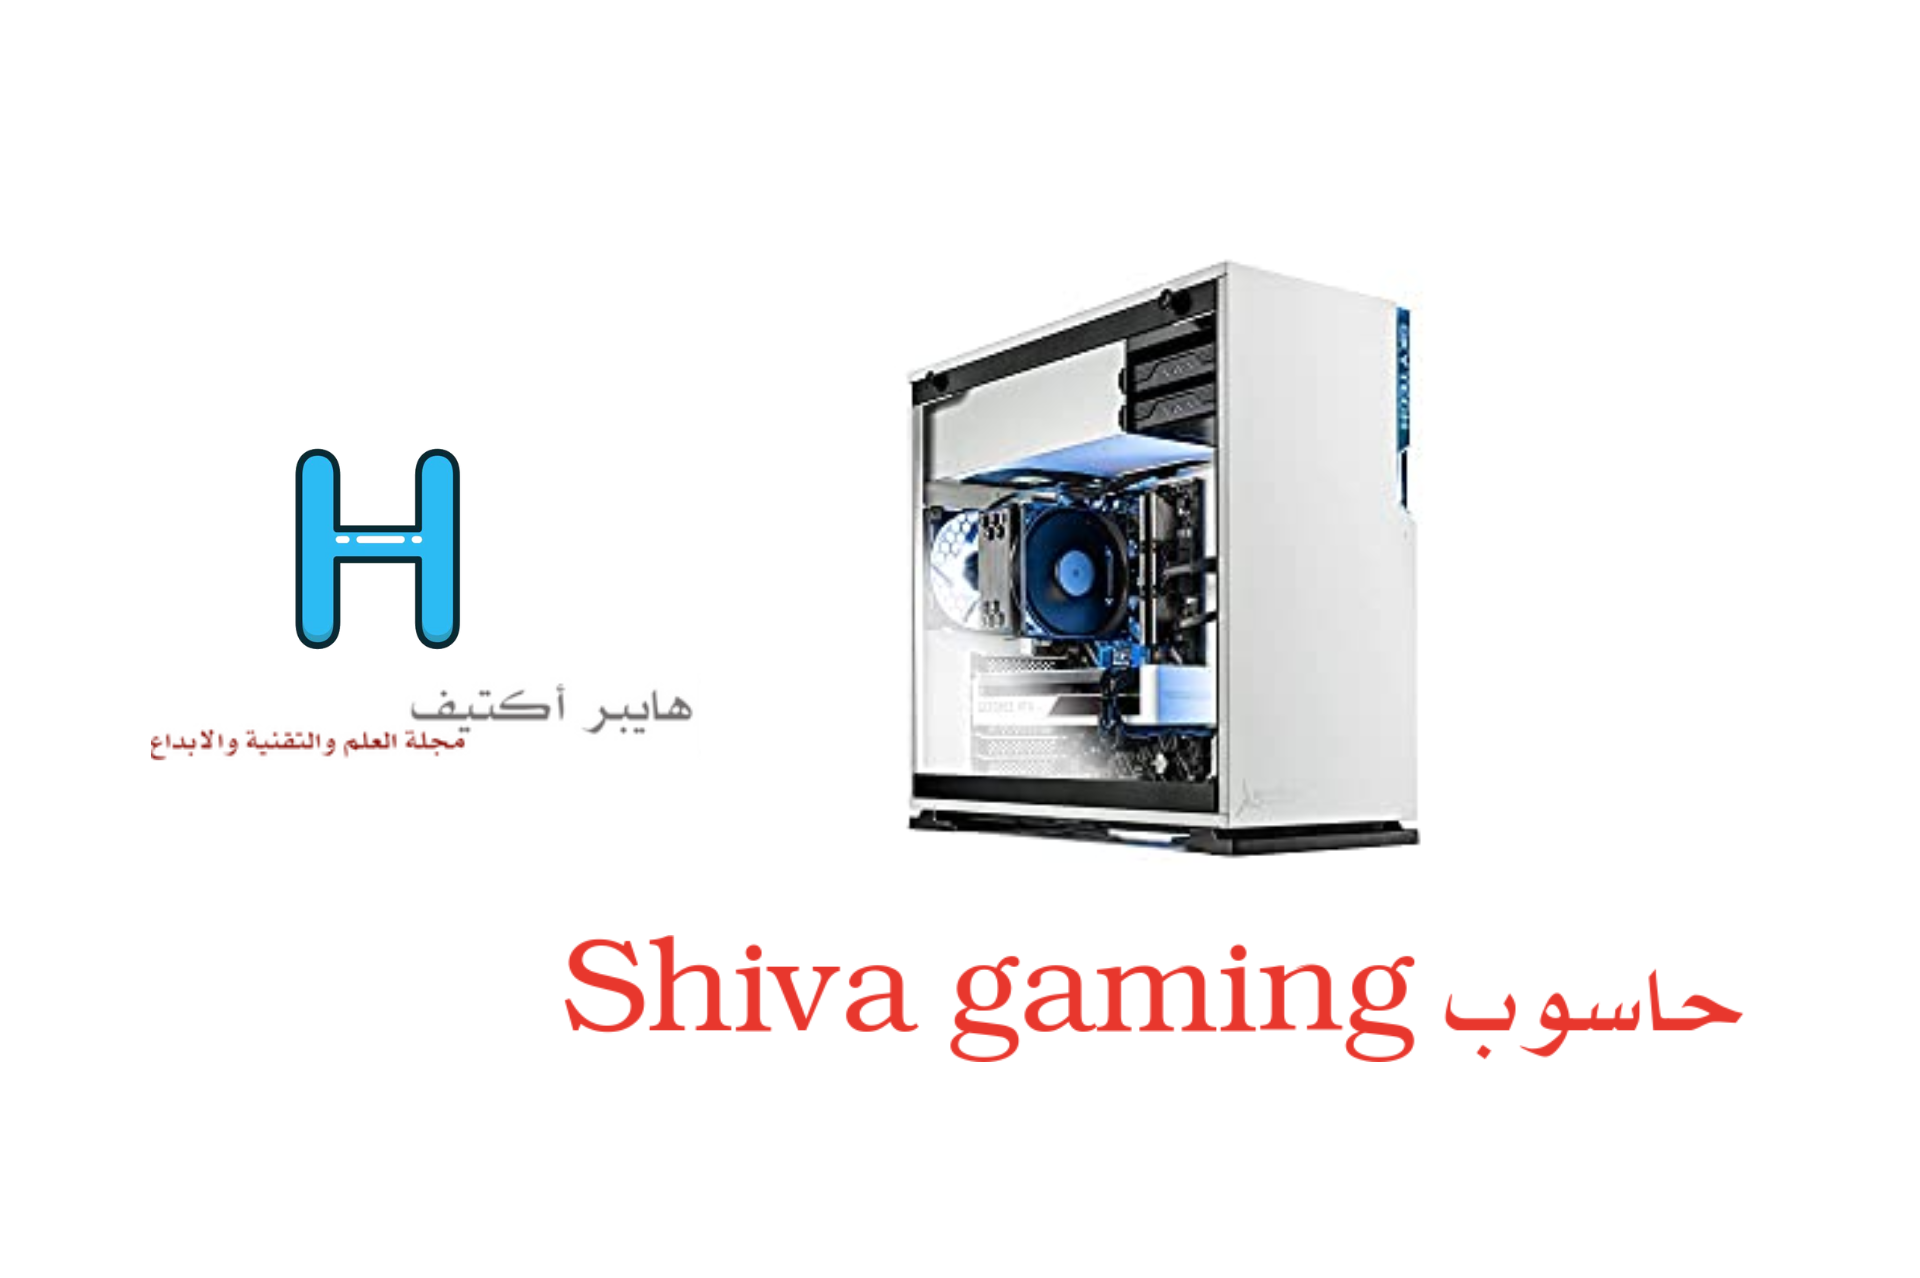 Shiva gaming